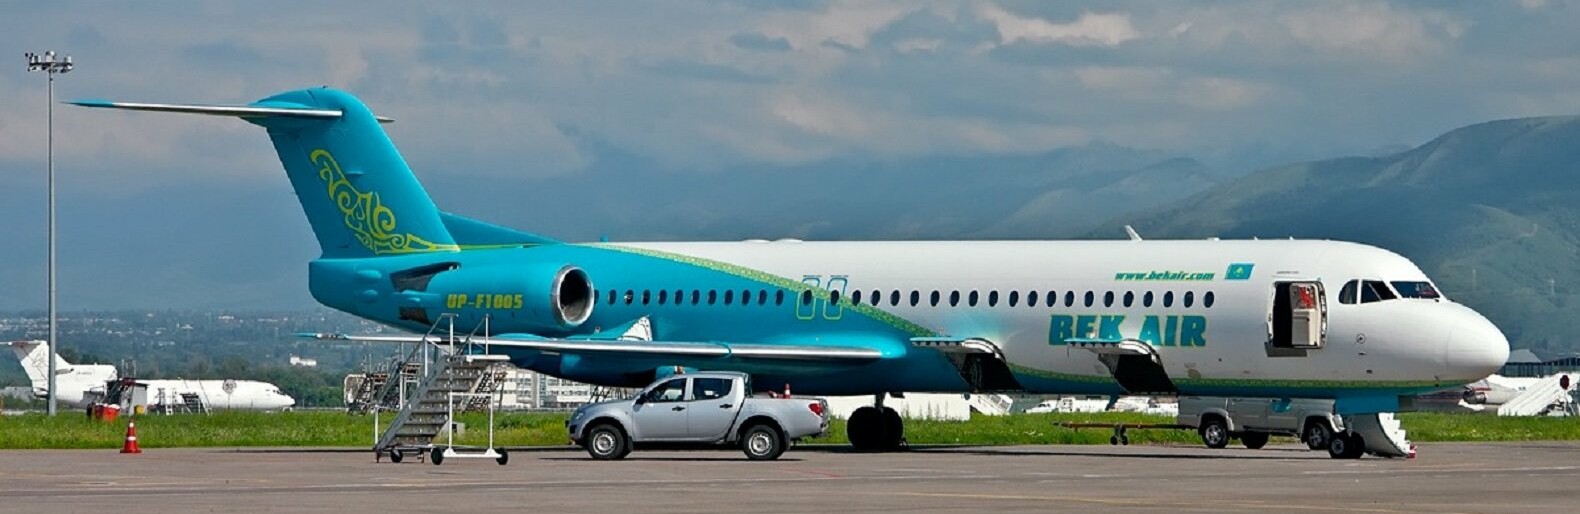 Самолет кз. Fokker 100 bek Air. Самолет Казахстан. Авиакомпании Казахстана самолеты.